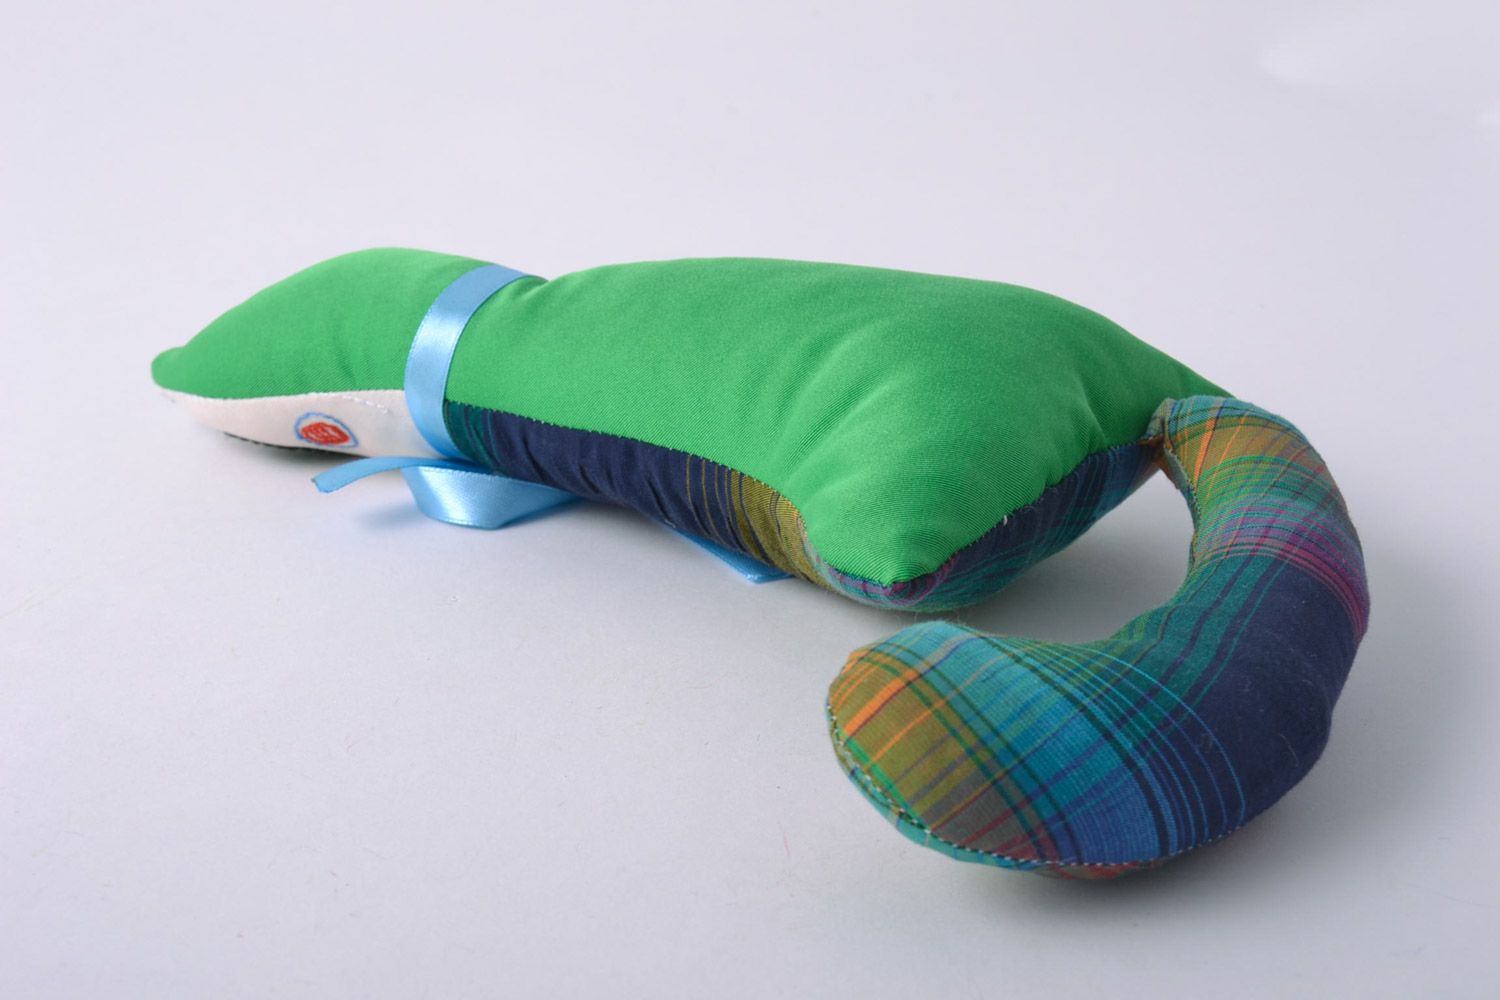 Текстильная мягкая игрушка ручной работы Кот авторская красивая с вышивкой фото 4